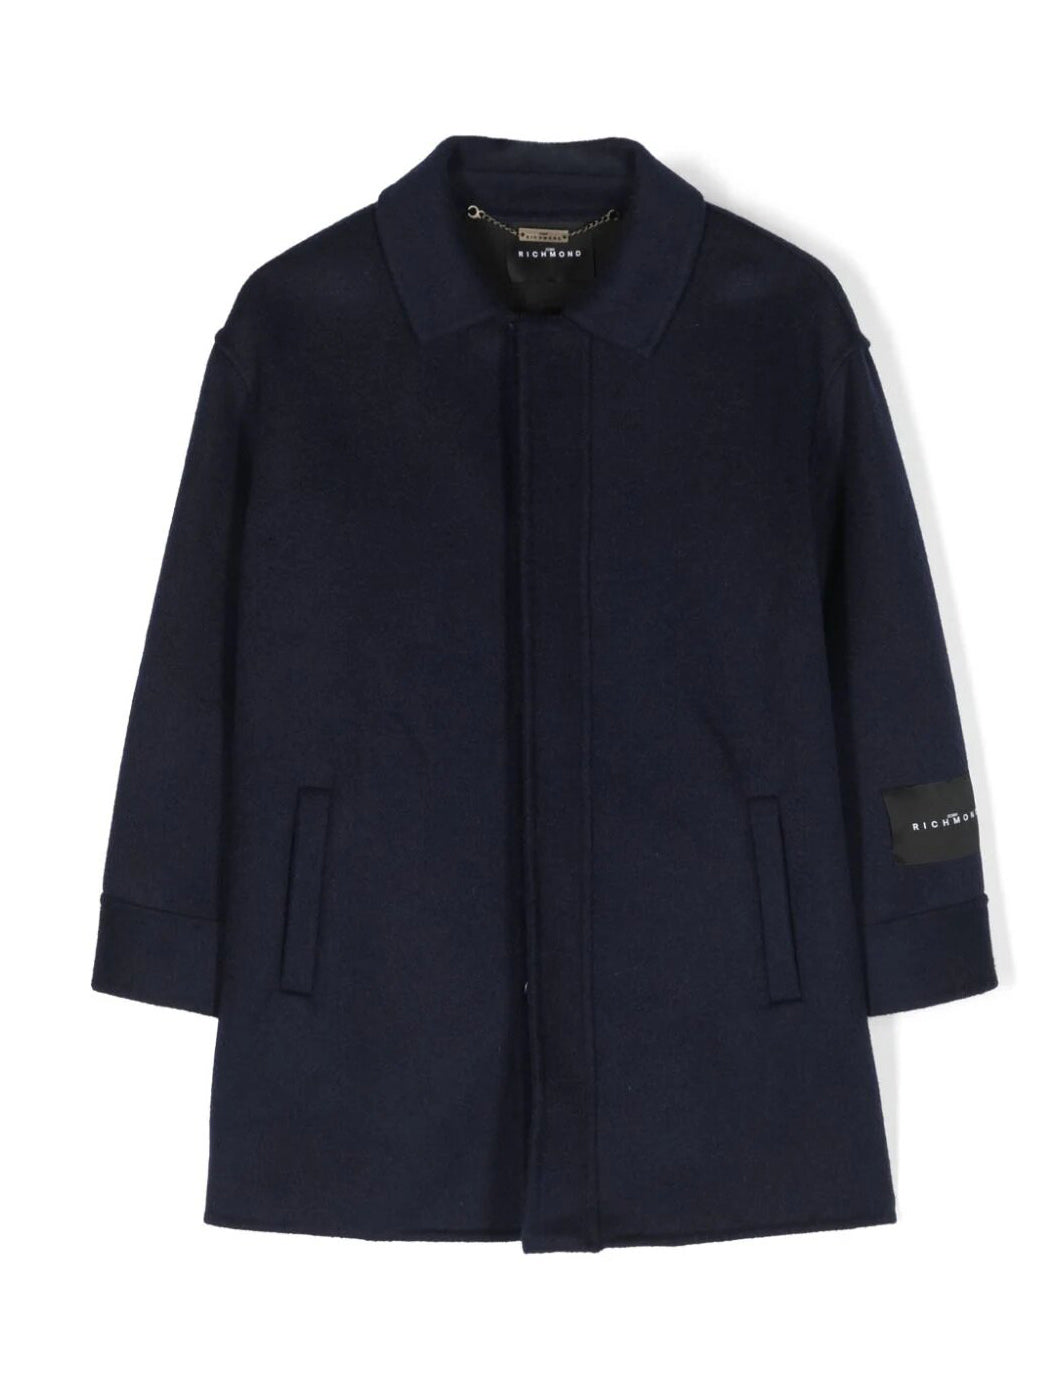 Boy's wool coat - RBA23051CP Blue